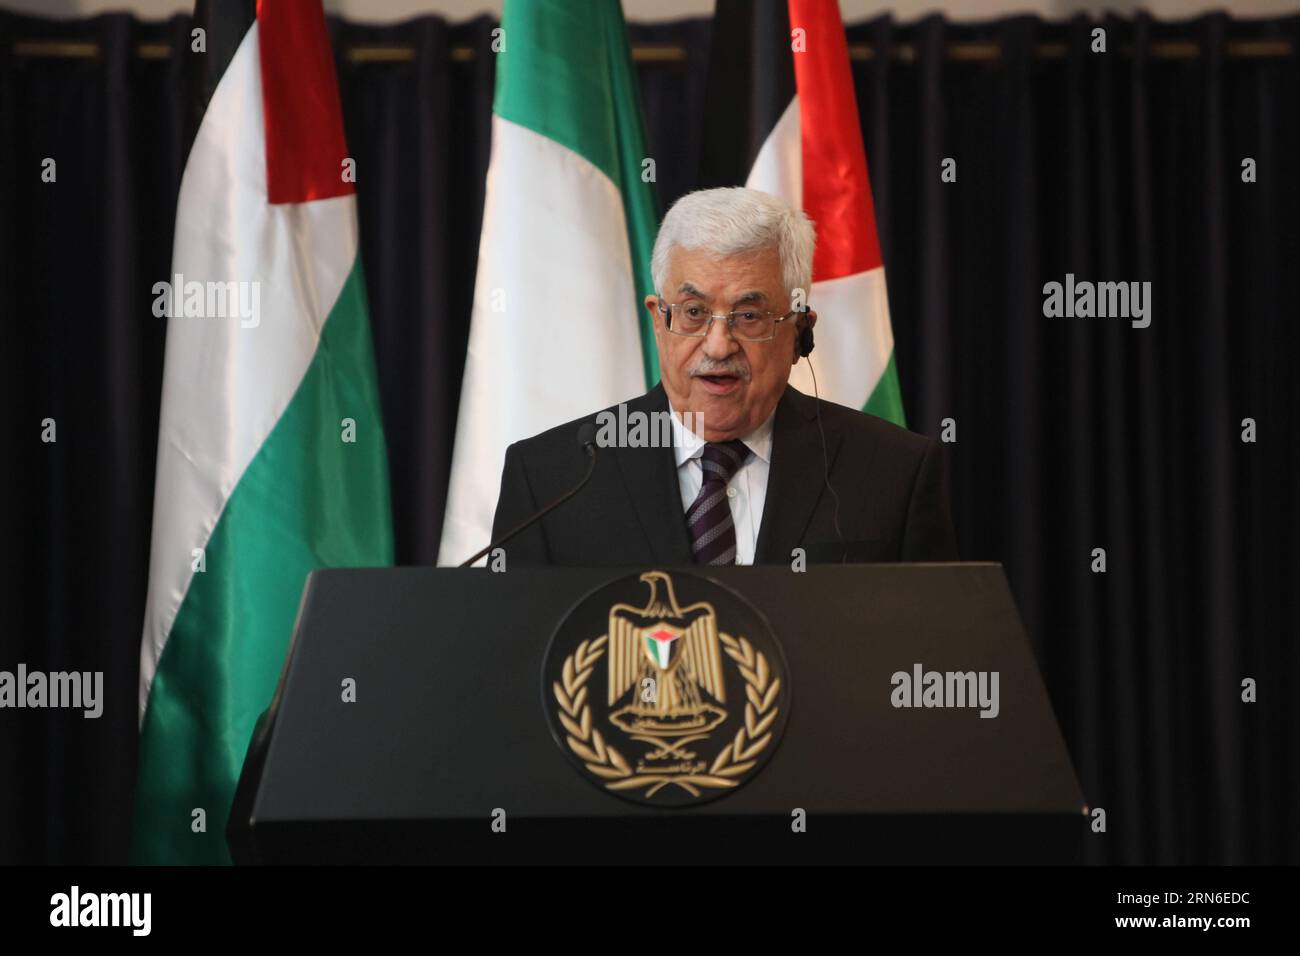 (150722) -- BETHLEHEM, 22. Juli 2015 -- der palästinensische Präsident Mahmoud Abbas spricht am 22. Juli 2015 in der Westjordstadt Bethlehem an einer gemeinsamen Pressekonferenz mit dem italienischen Premierminister Matteo Renzi. ) MIDEAST-BETHLEHEM-PRESSEKONFERENZ LuayxSababa PUBLICATIONxNOTxINxCHN 150722 Bethlehem 22. Juli 2015 PALÄSTINENSISCHER Präsident Mahmoud Abbas spricht AM 22. Juli 2015 in Bethlehem in der WESTJORDANLAND-Stadt eine gemeinsame Pressekonferenz mit dem italienischen Premierminister Matteo Renzi Stockfoto